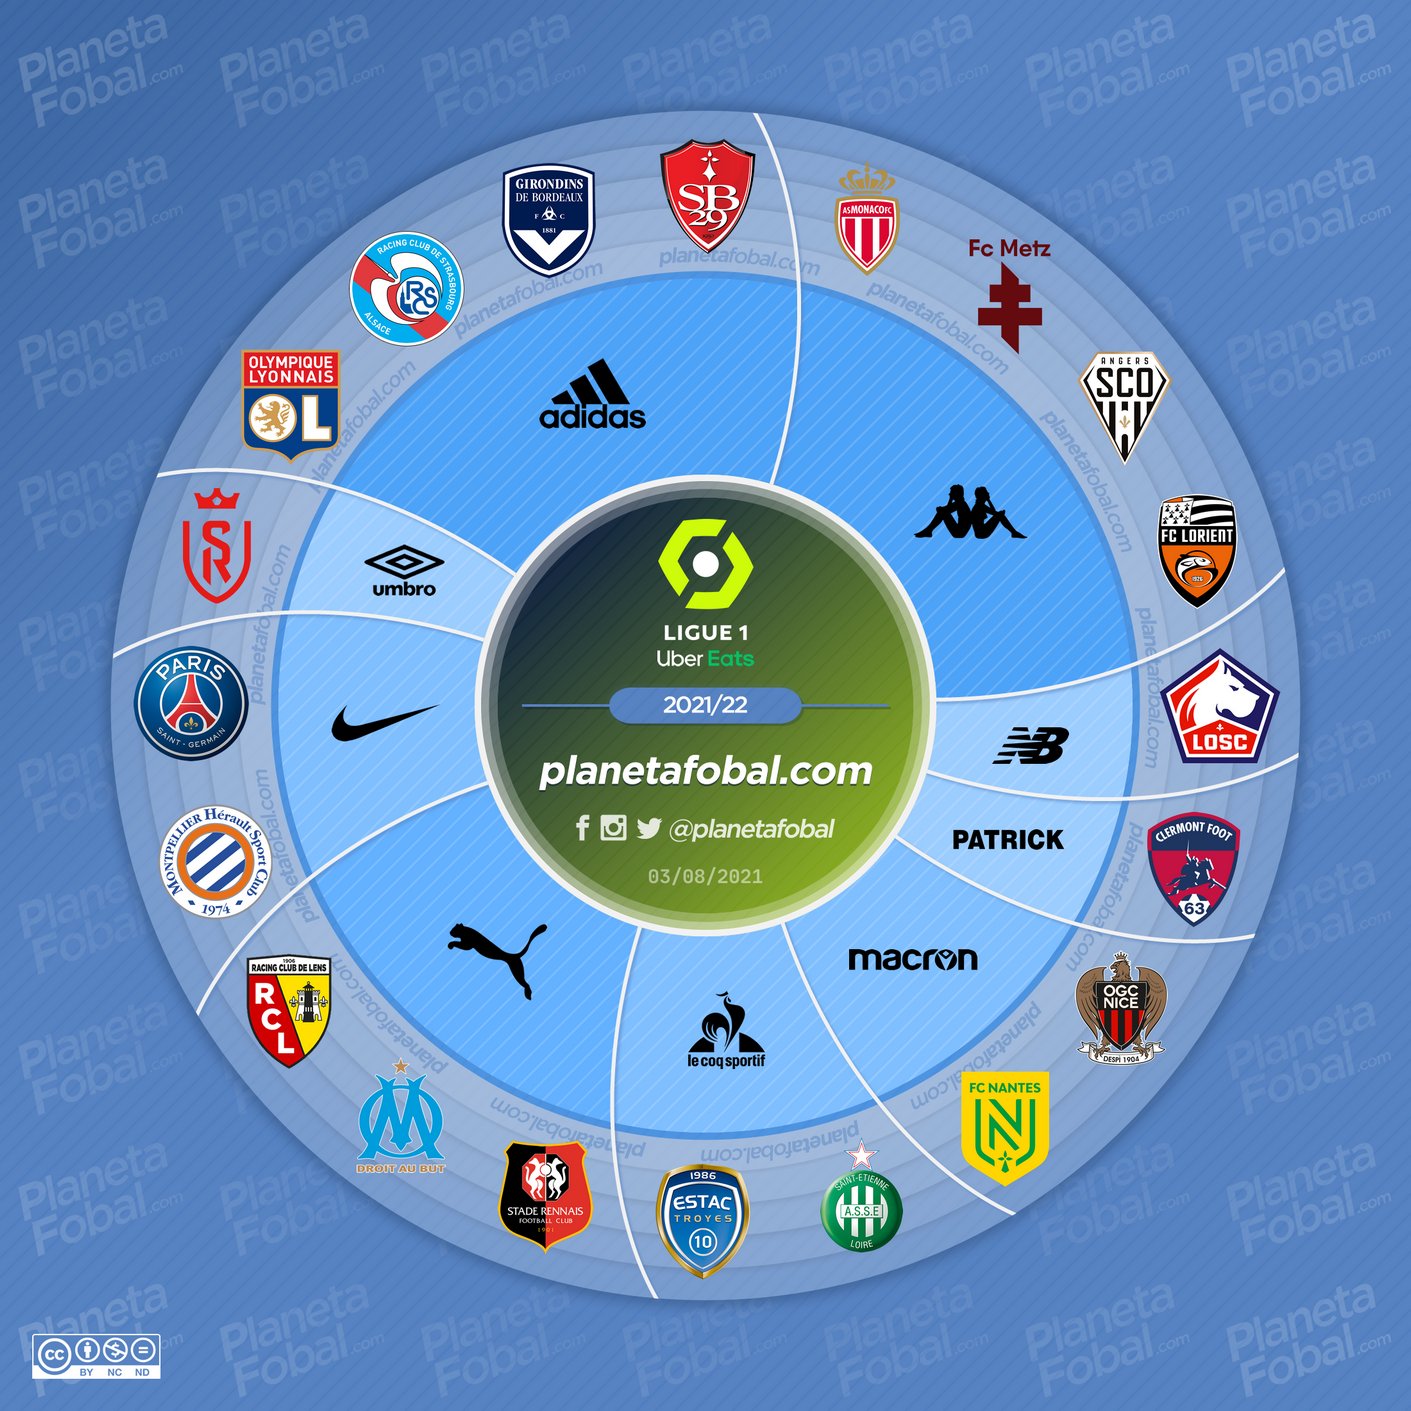 Marcas deportivas de la Ligue 1 2021/2022